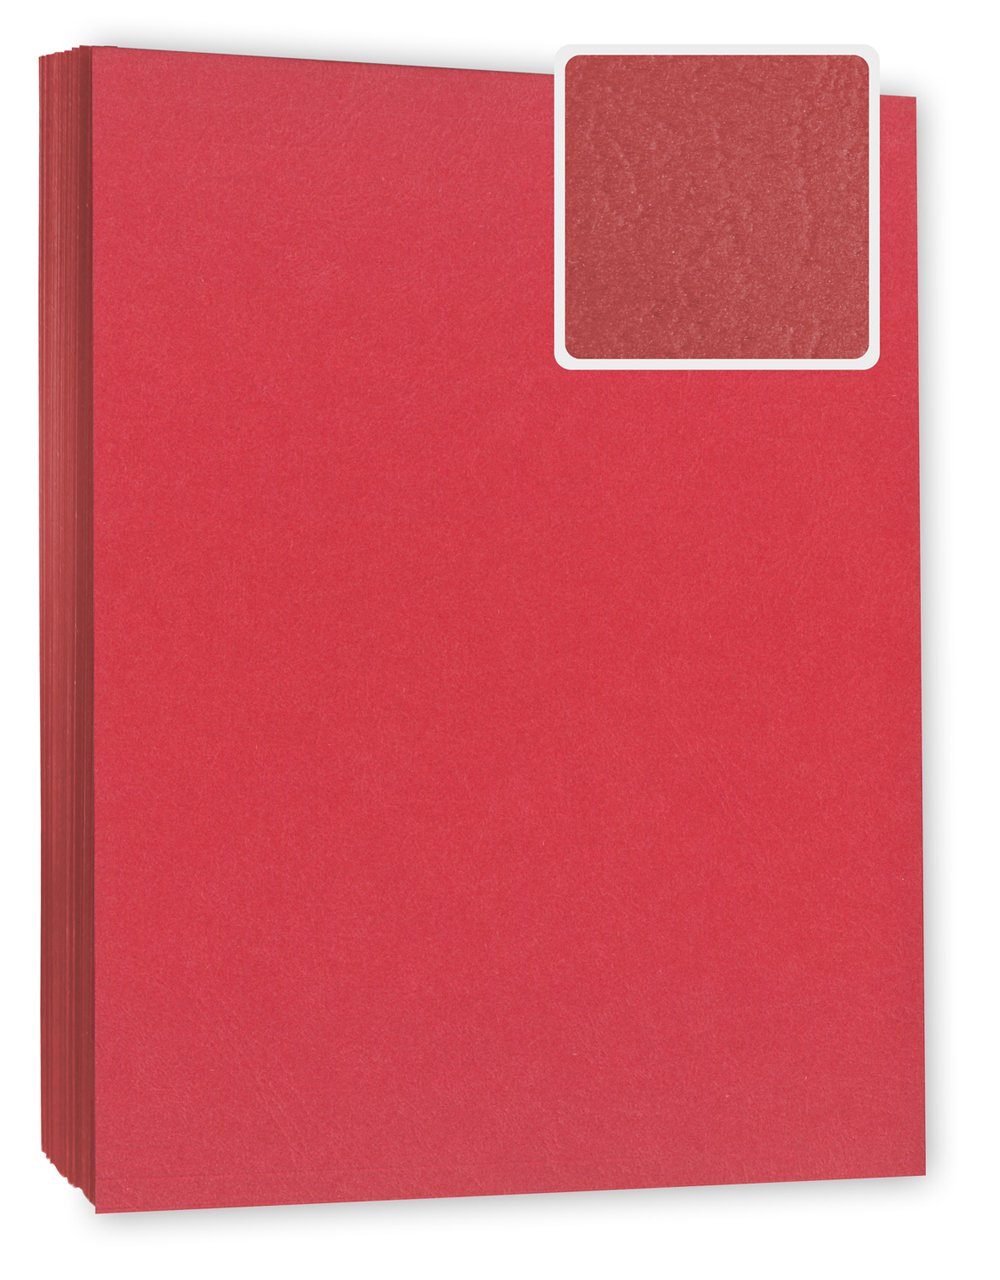 Kopierladen Berlin Papierkarton Bindekarton / Deckblatt, DIN A4 240 g/m², 100 Stück in Lederoptik rot